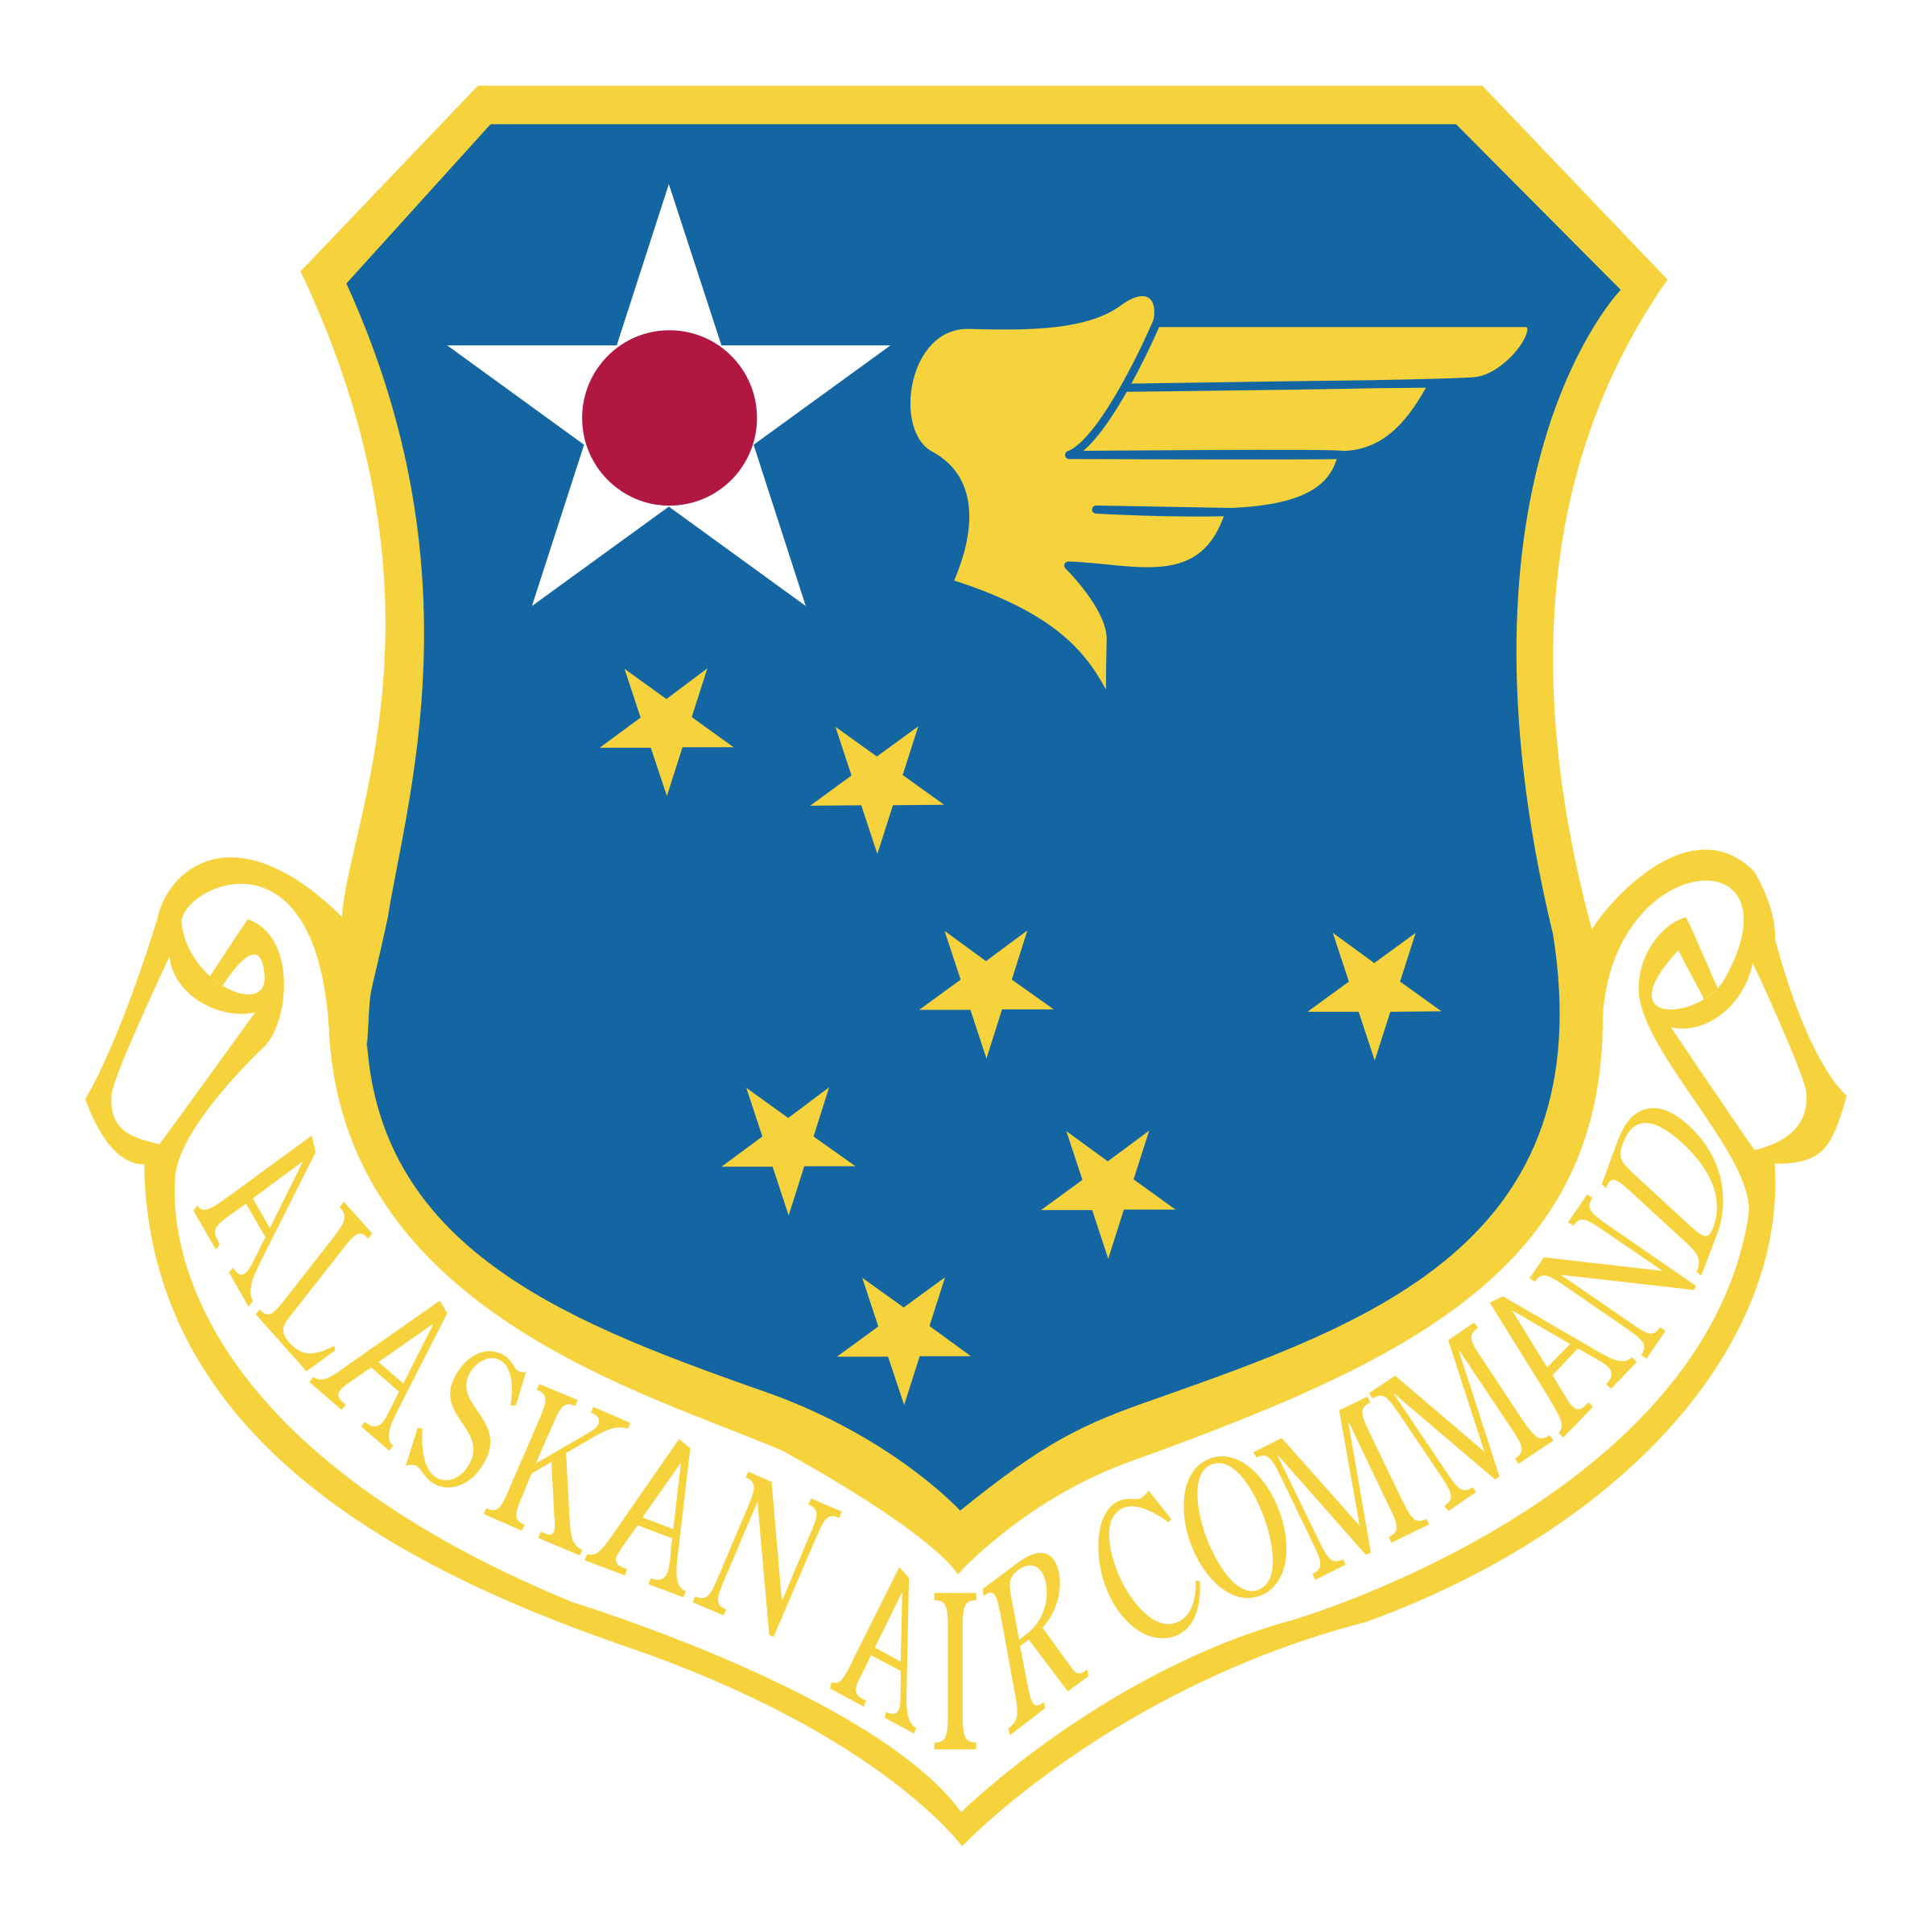 Alaskan Logo - Alaskan Air Command Logo PNG Transparent & SVG Vector